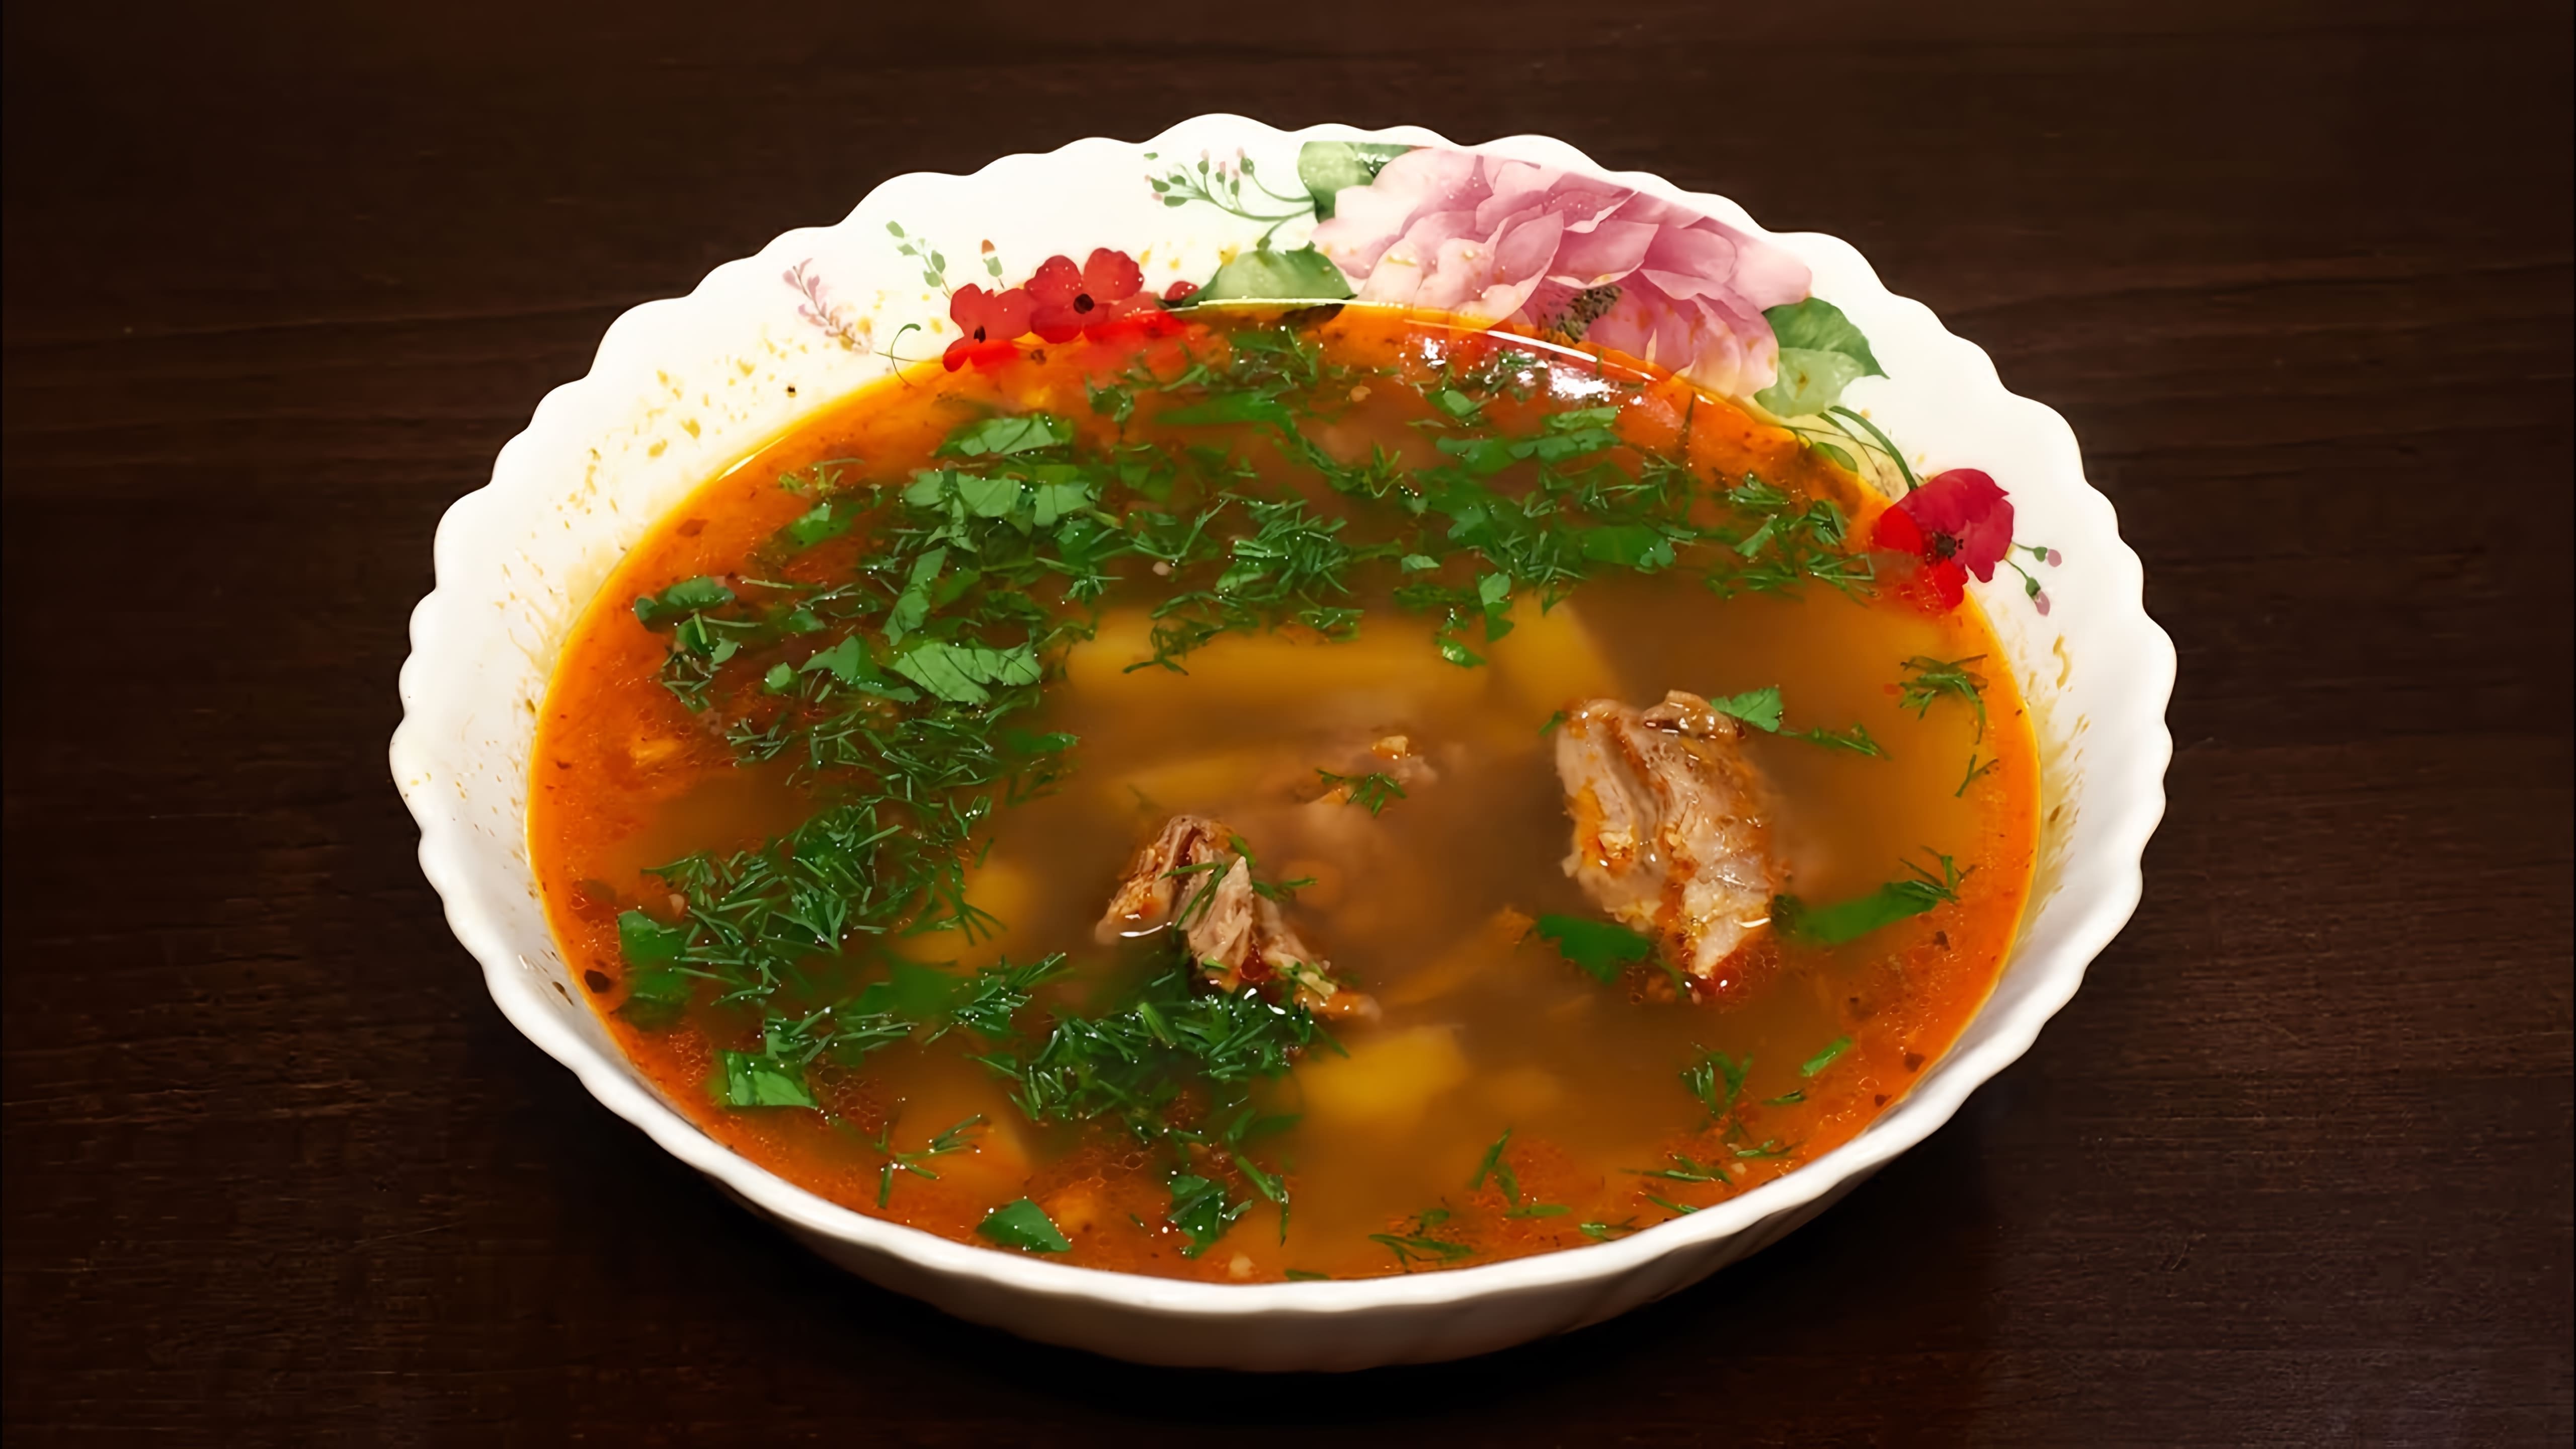 В этом видео демонстрируется рецепт приготовления чечевичного супа в мультиварке